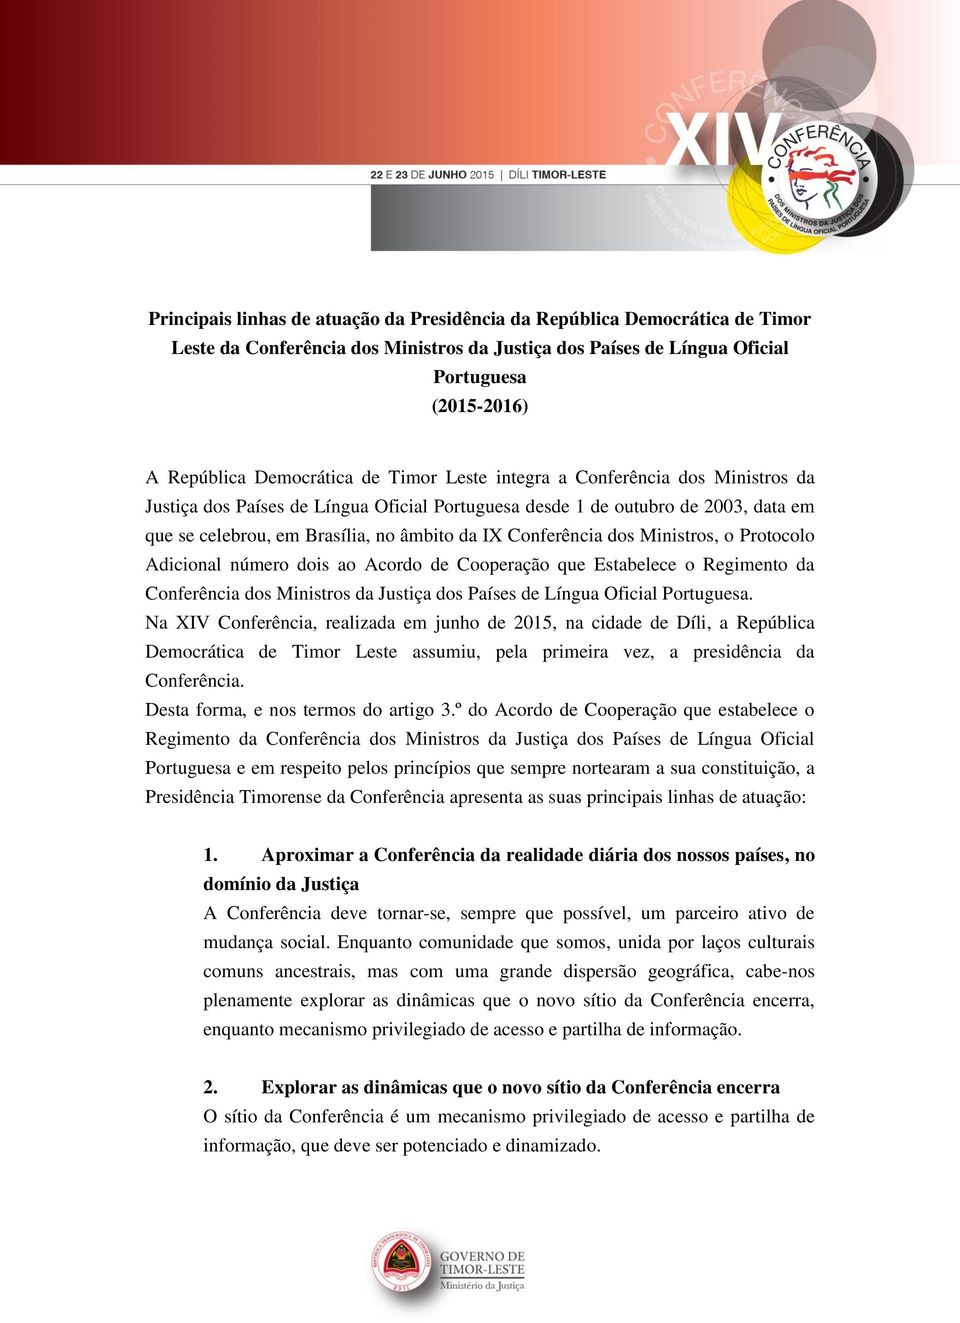 Ministros, o Protocolo Adicional número dois ao Acordo de Cooperação que Estabelece o Regimento da Conferência dos Ministros da Justiça dos Países de Língua Oficial Portuguesa.